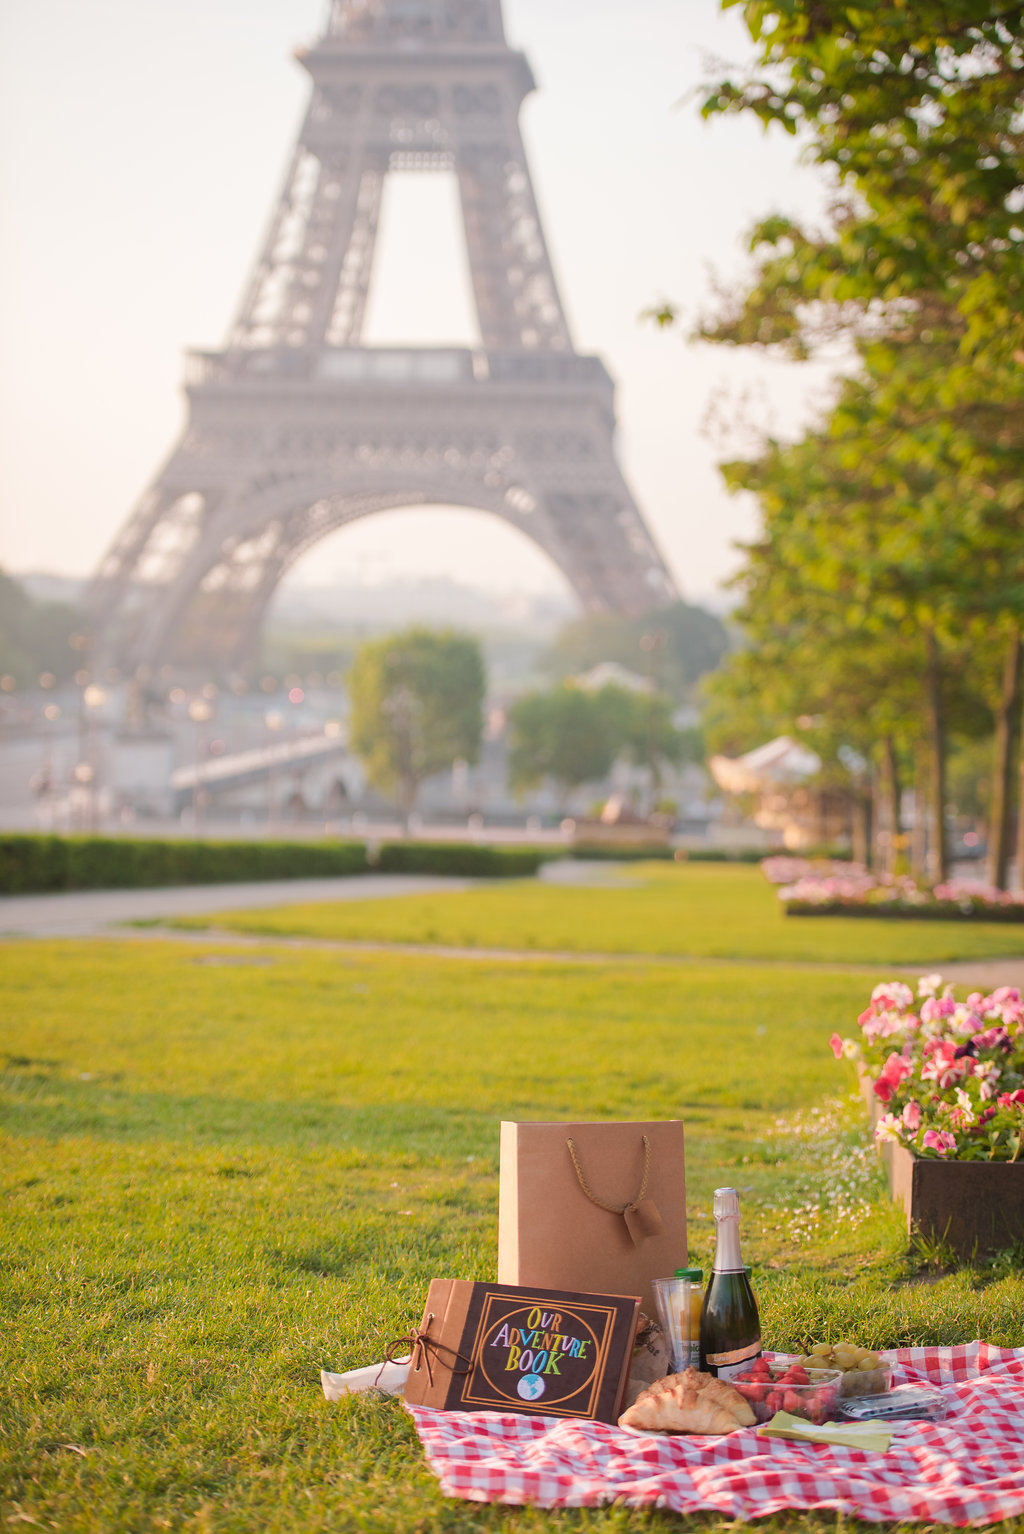 Sunrise Trocadero Proposal & Picnic! - Pictours™ Paris Photography